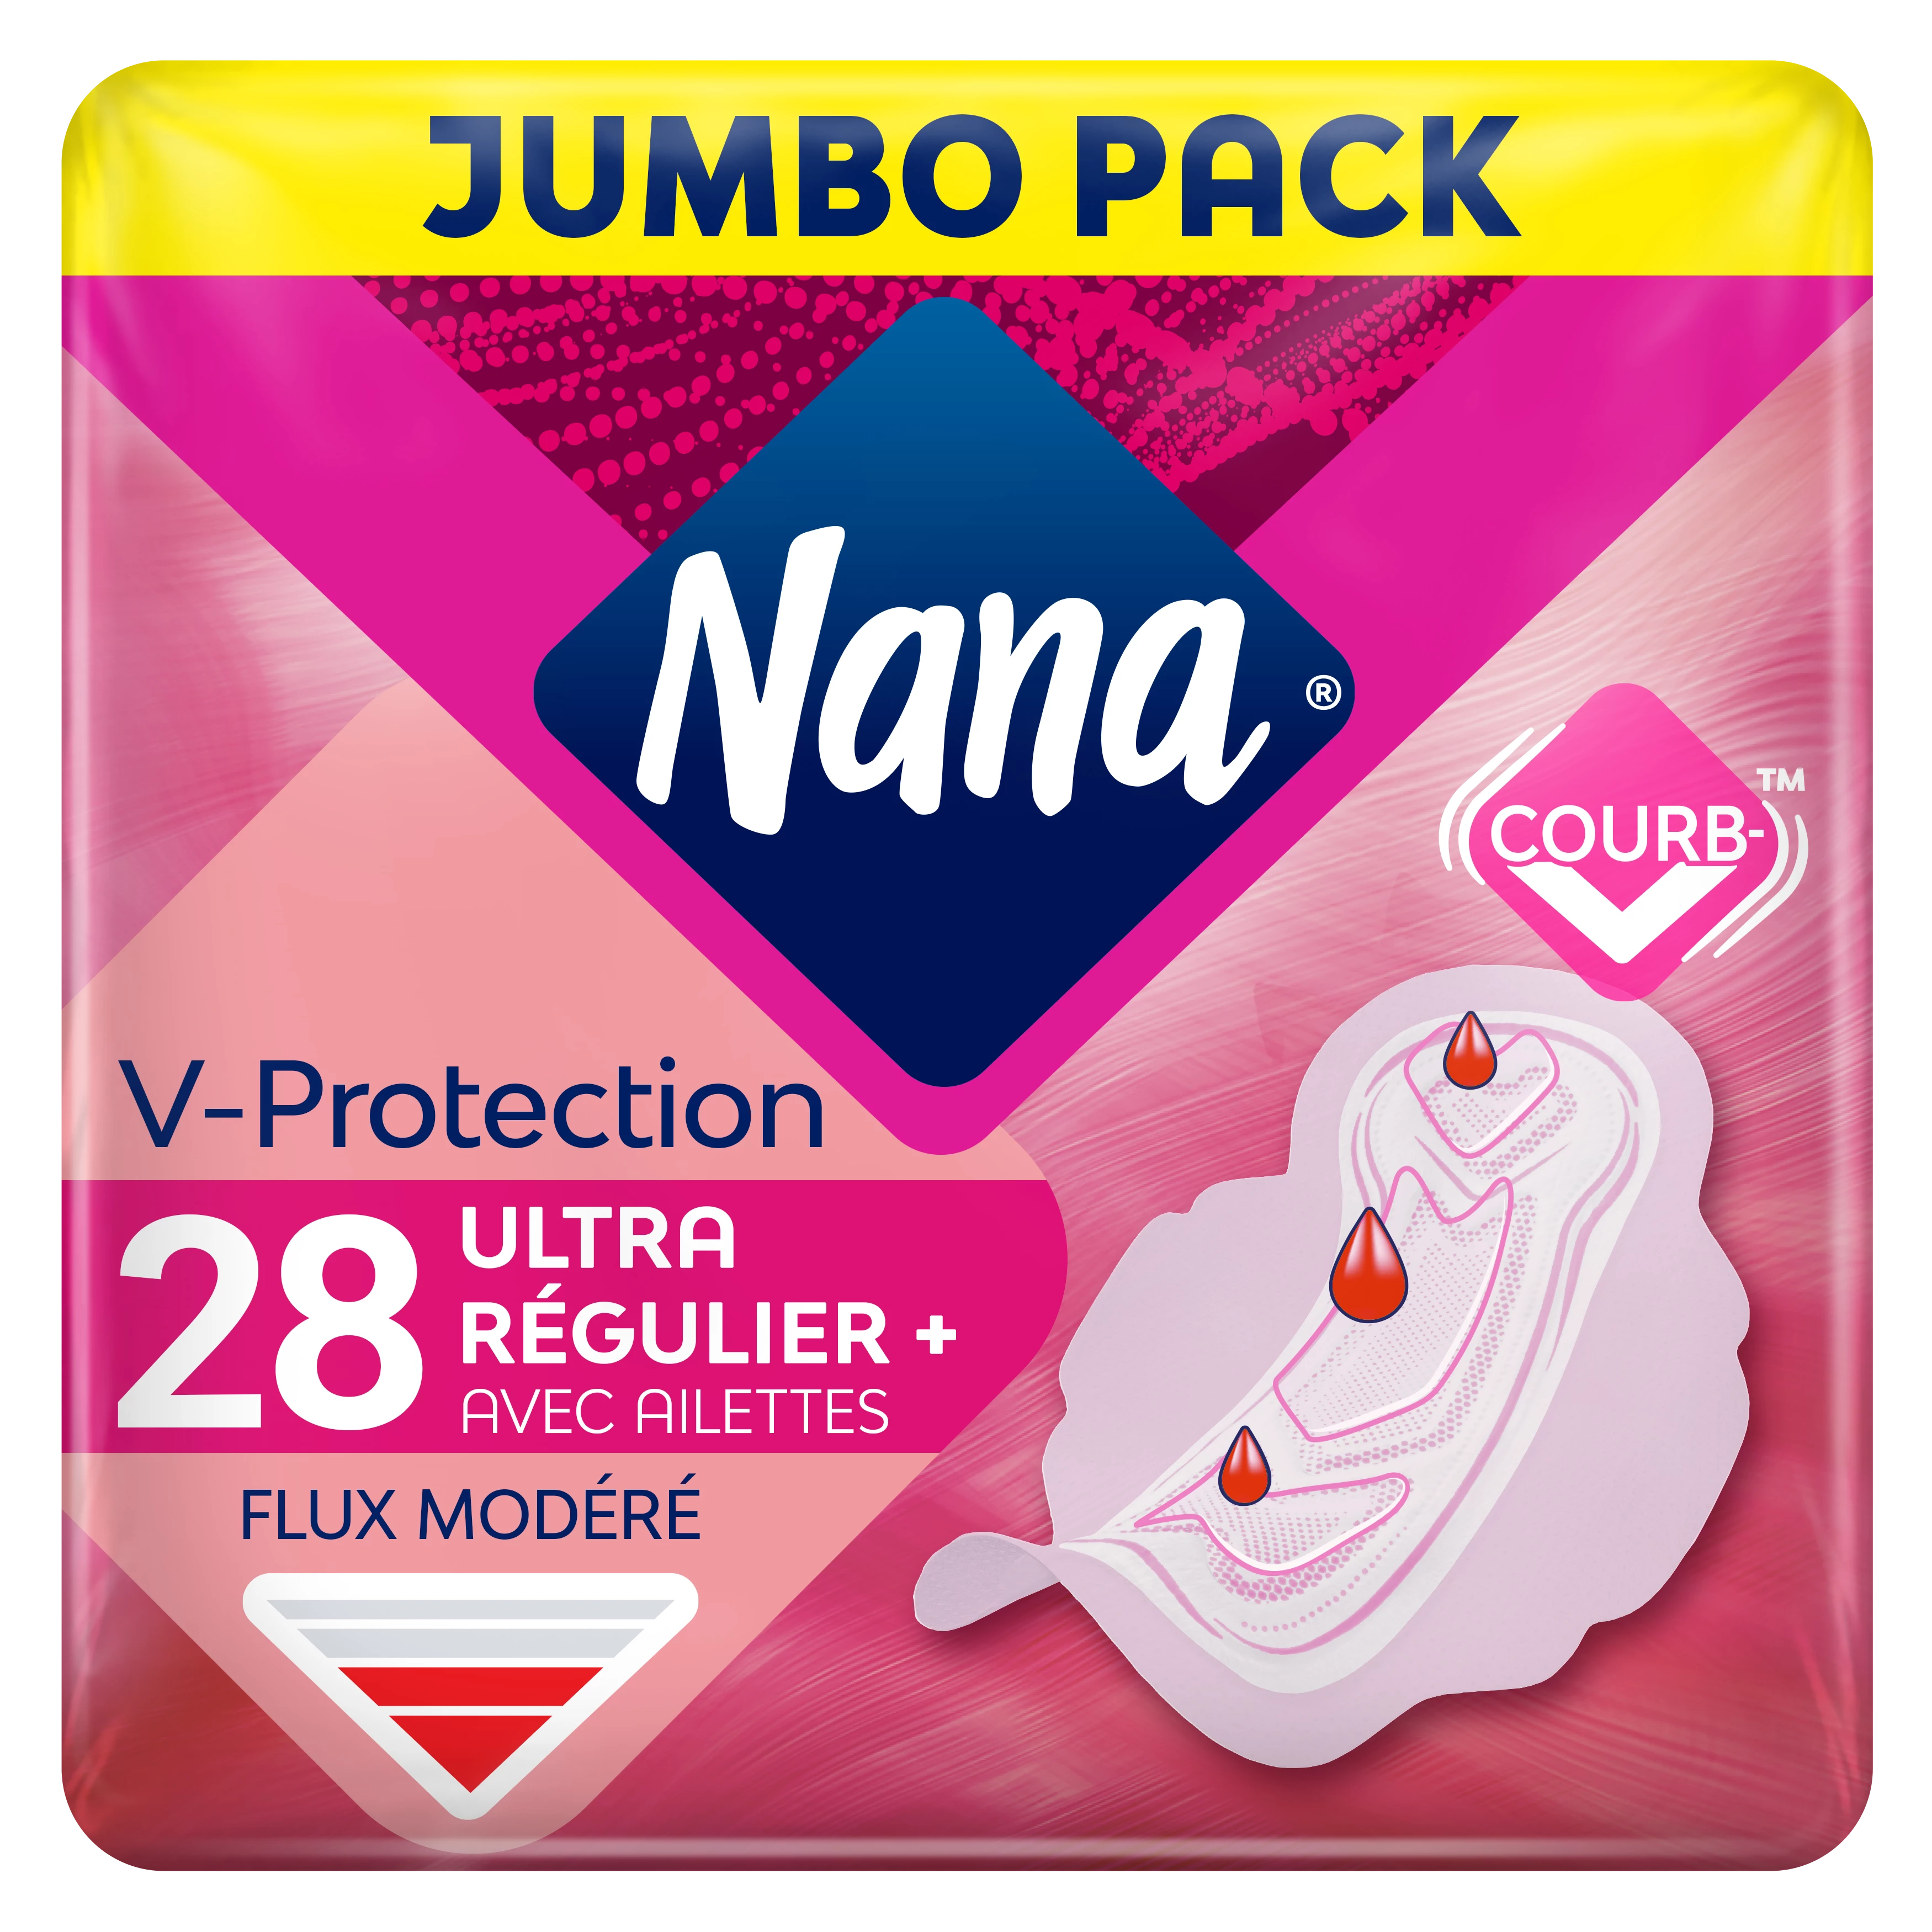 Nana 超常规卫生巾+X28 - NANA